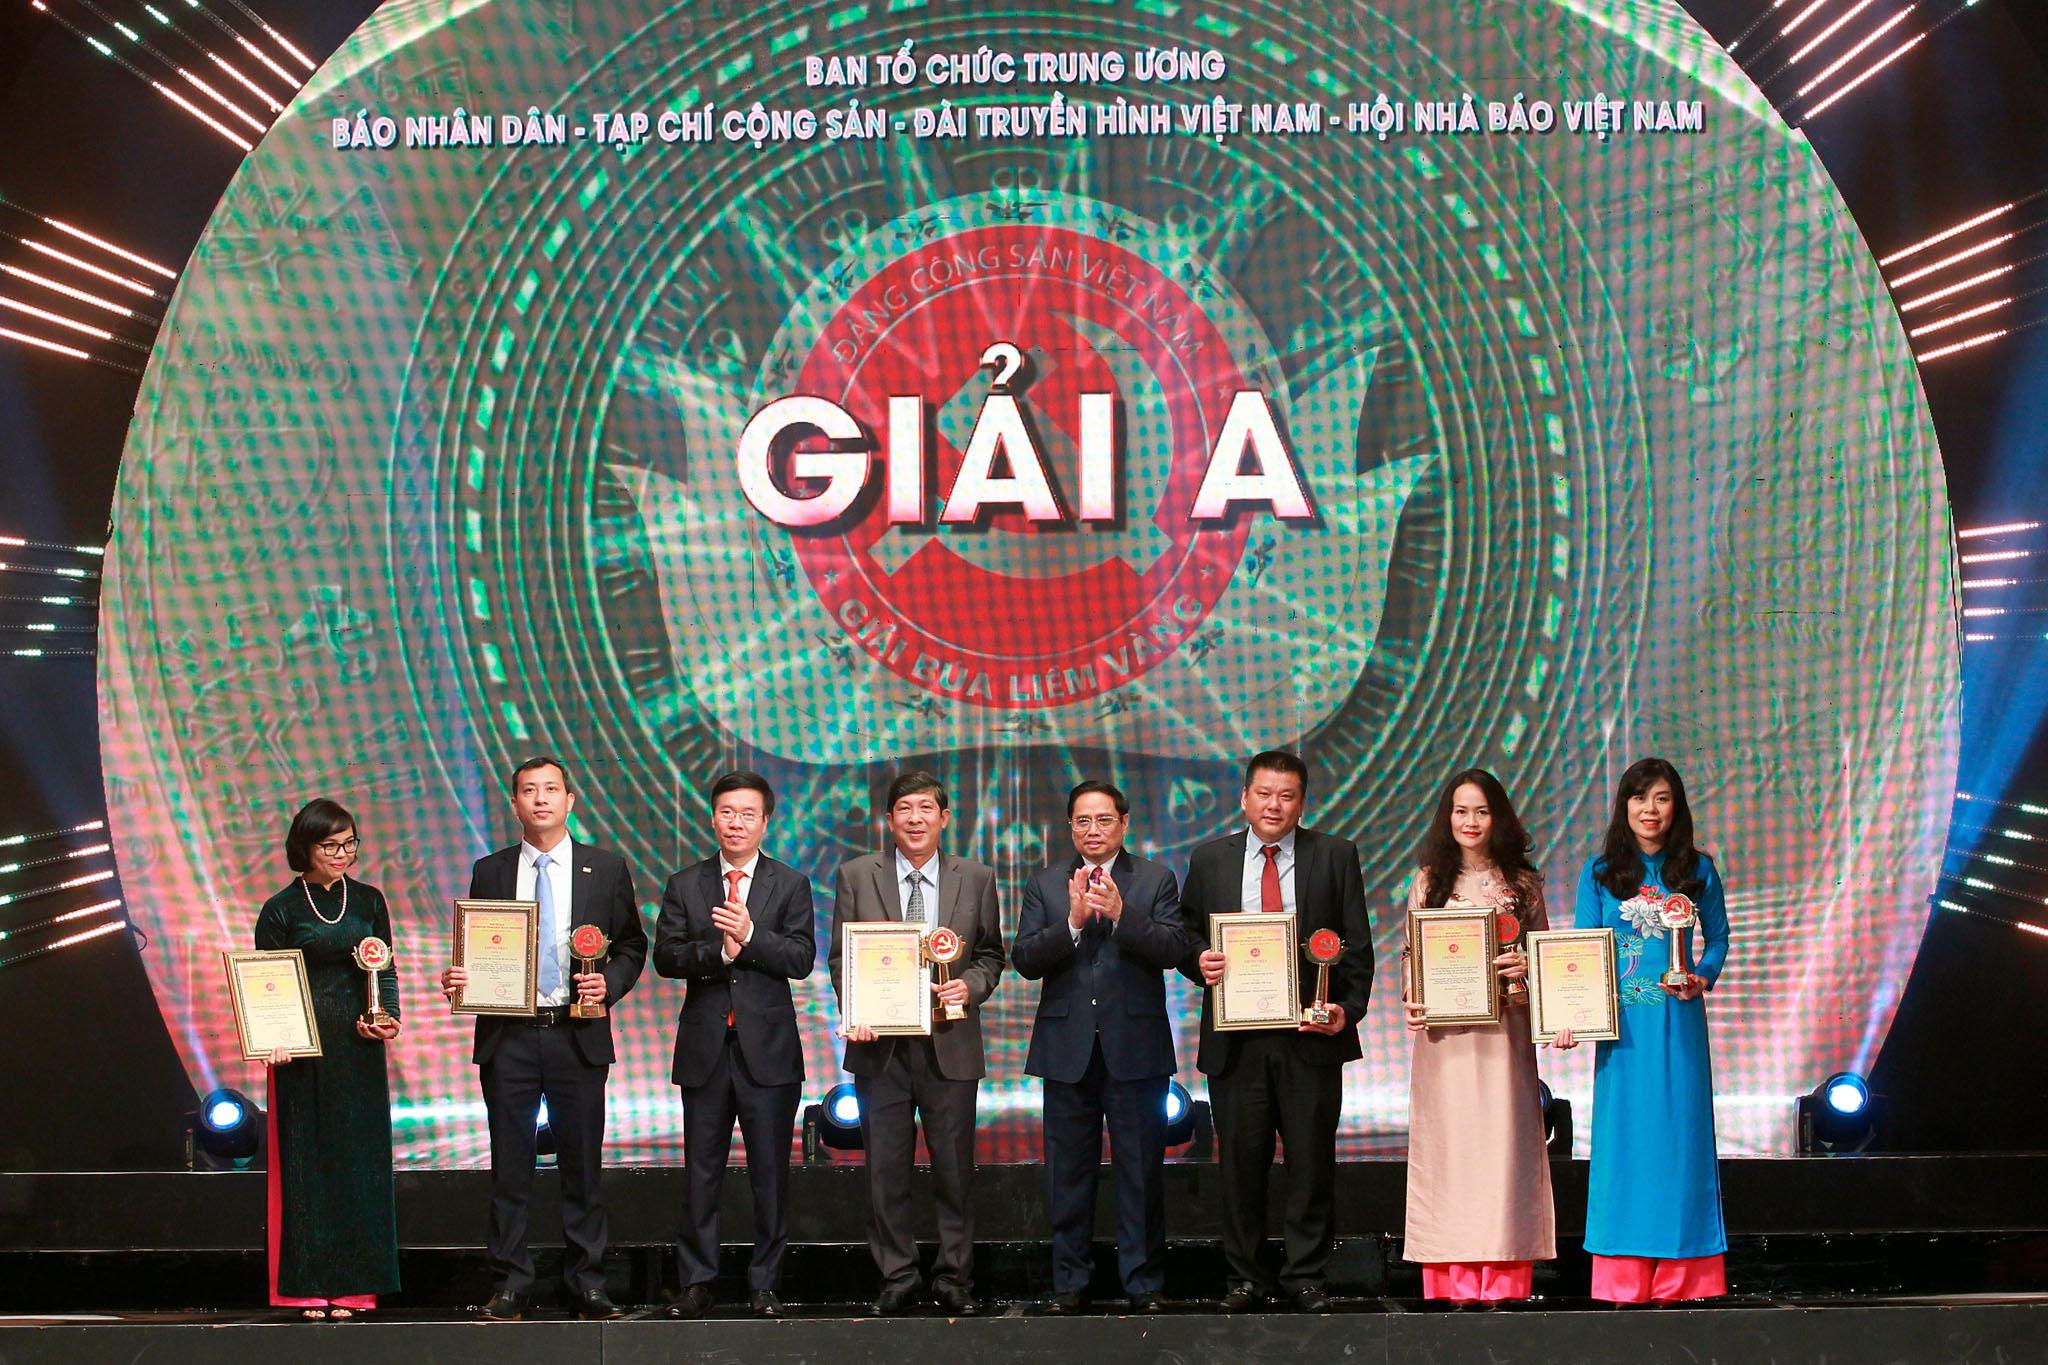 Thủ tướng Phạm Minh Chính và Thường trực Ban Bí thư Võ Văn Thưởng trao giải, chúc mừng các tác giả, nhóm tác giả đoạt giải A Búa liềm vàng năm 2021.